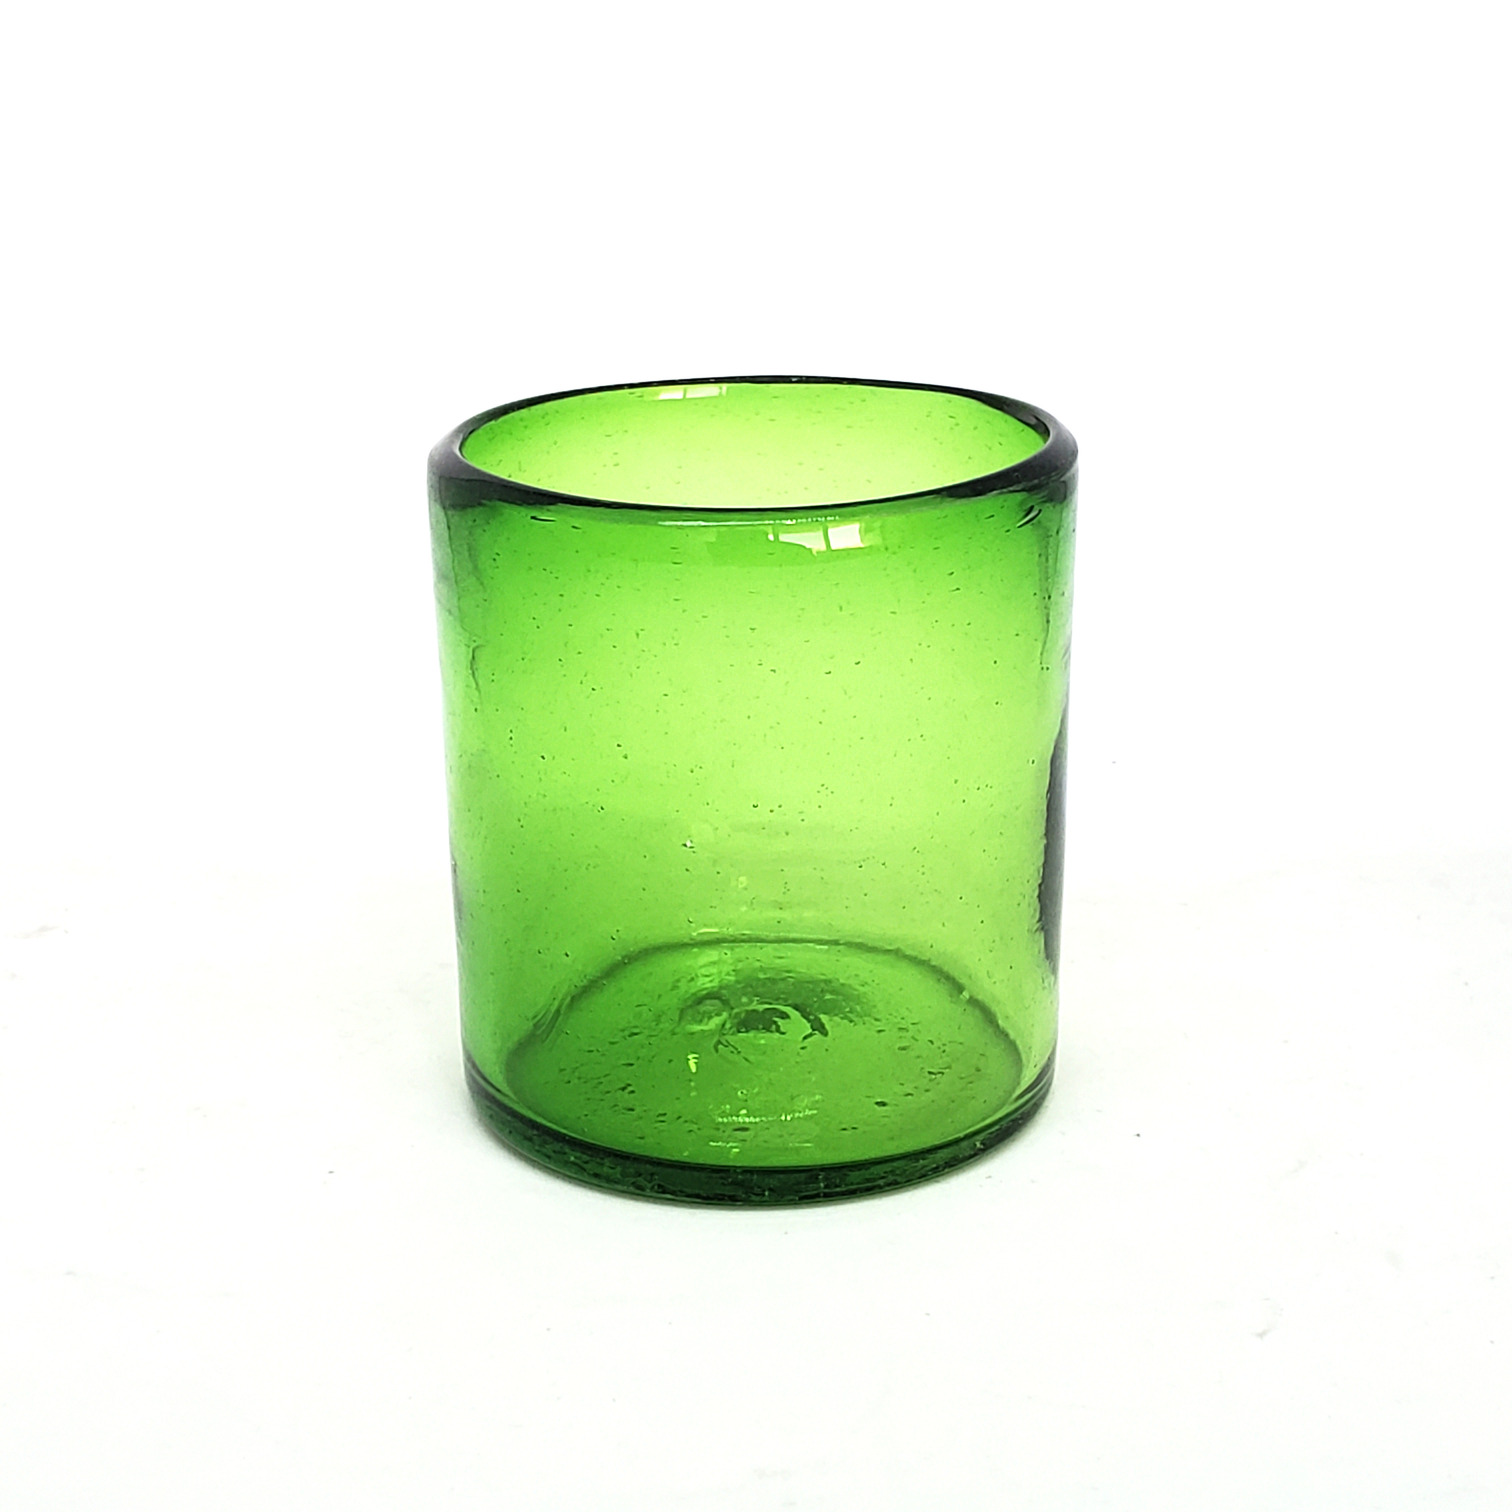 Novedades / Vasos chicos 9 oz color Verde Esmeralda Sólido (set de 6) / Éstos artesanales vasos le darán un toque colorido a su bebida favorita.